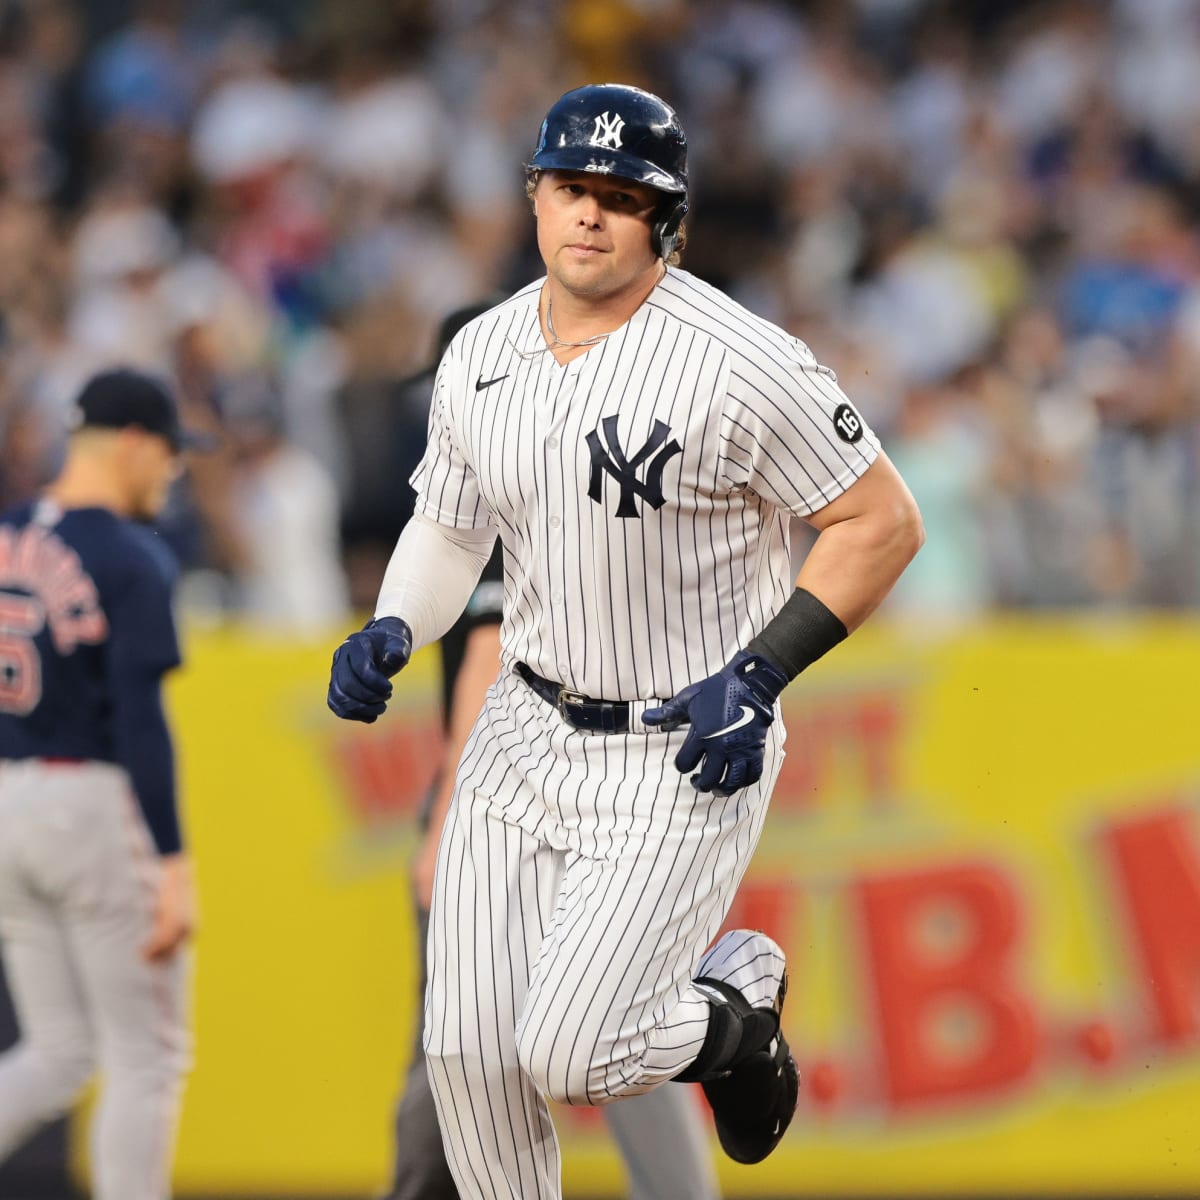 Yankees 1B Luke Voit doubles in Triple-A rehab appearance as